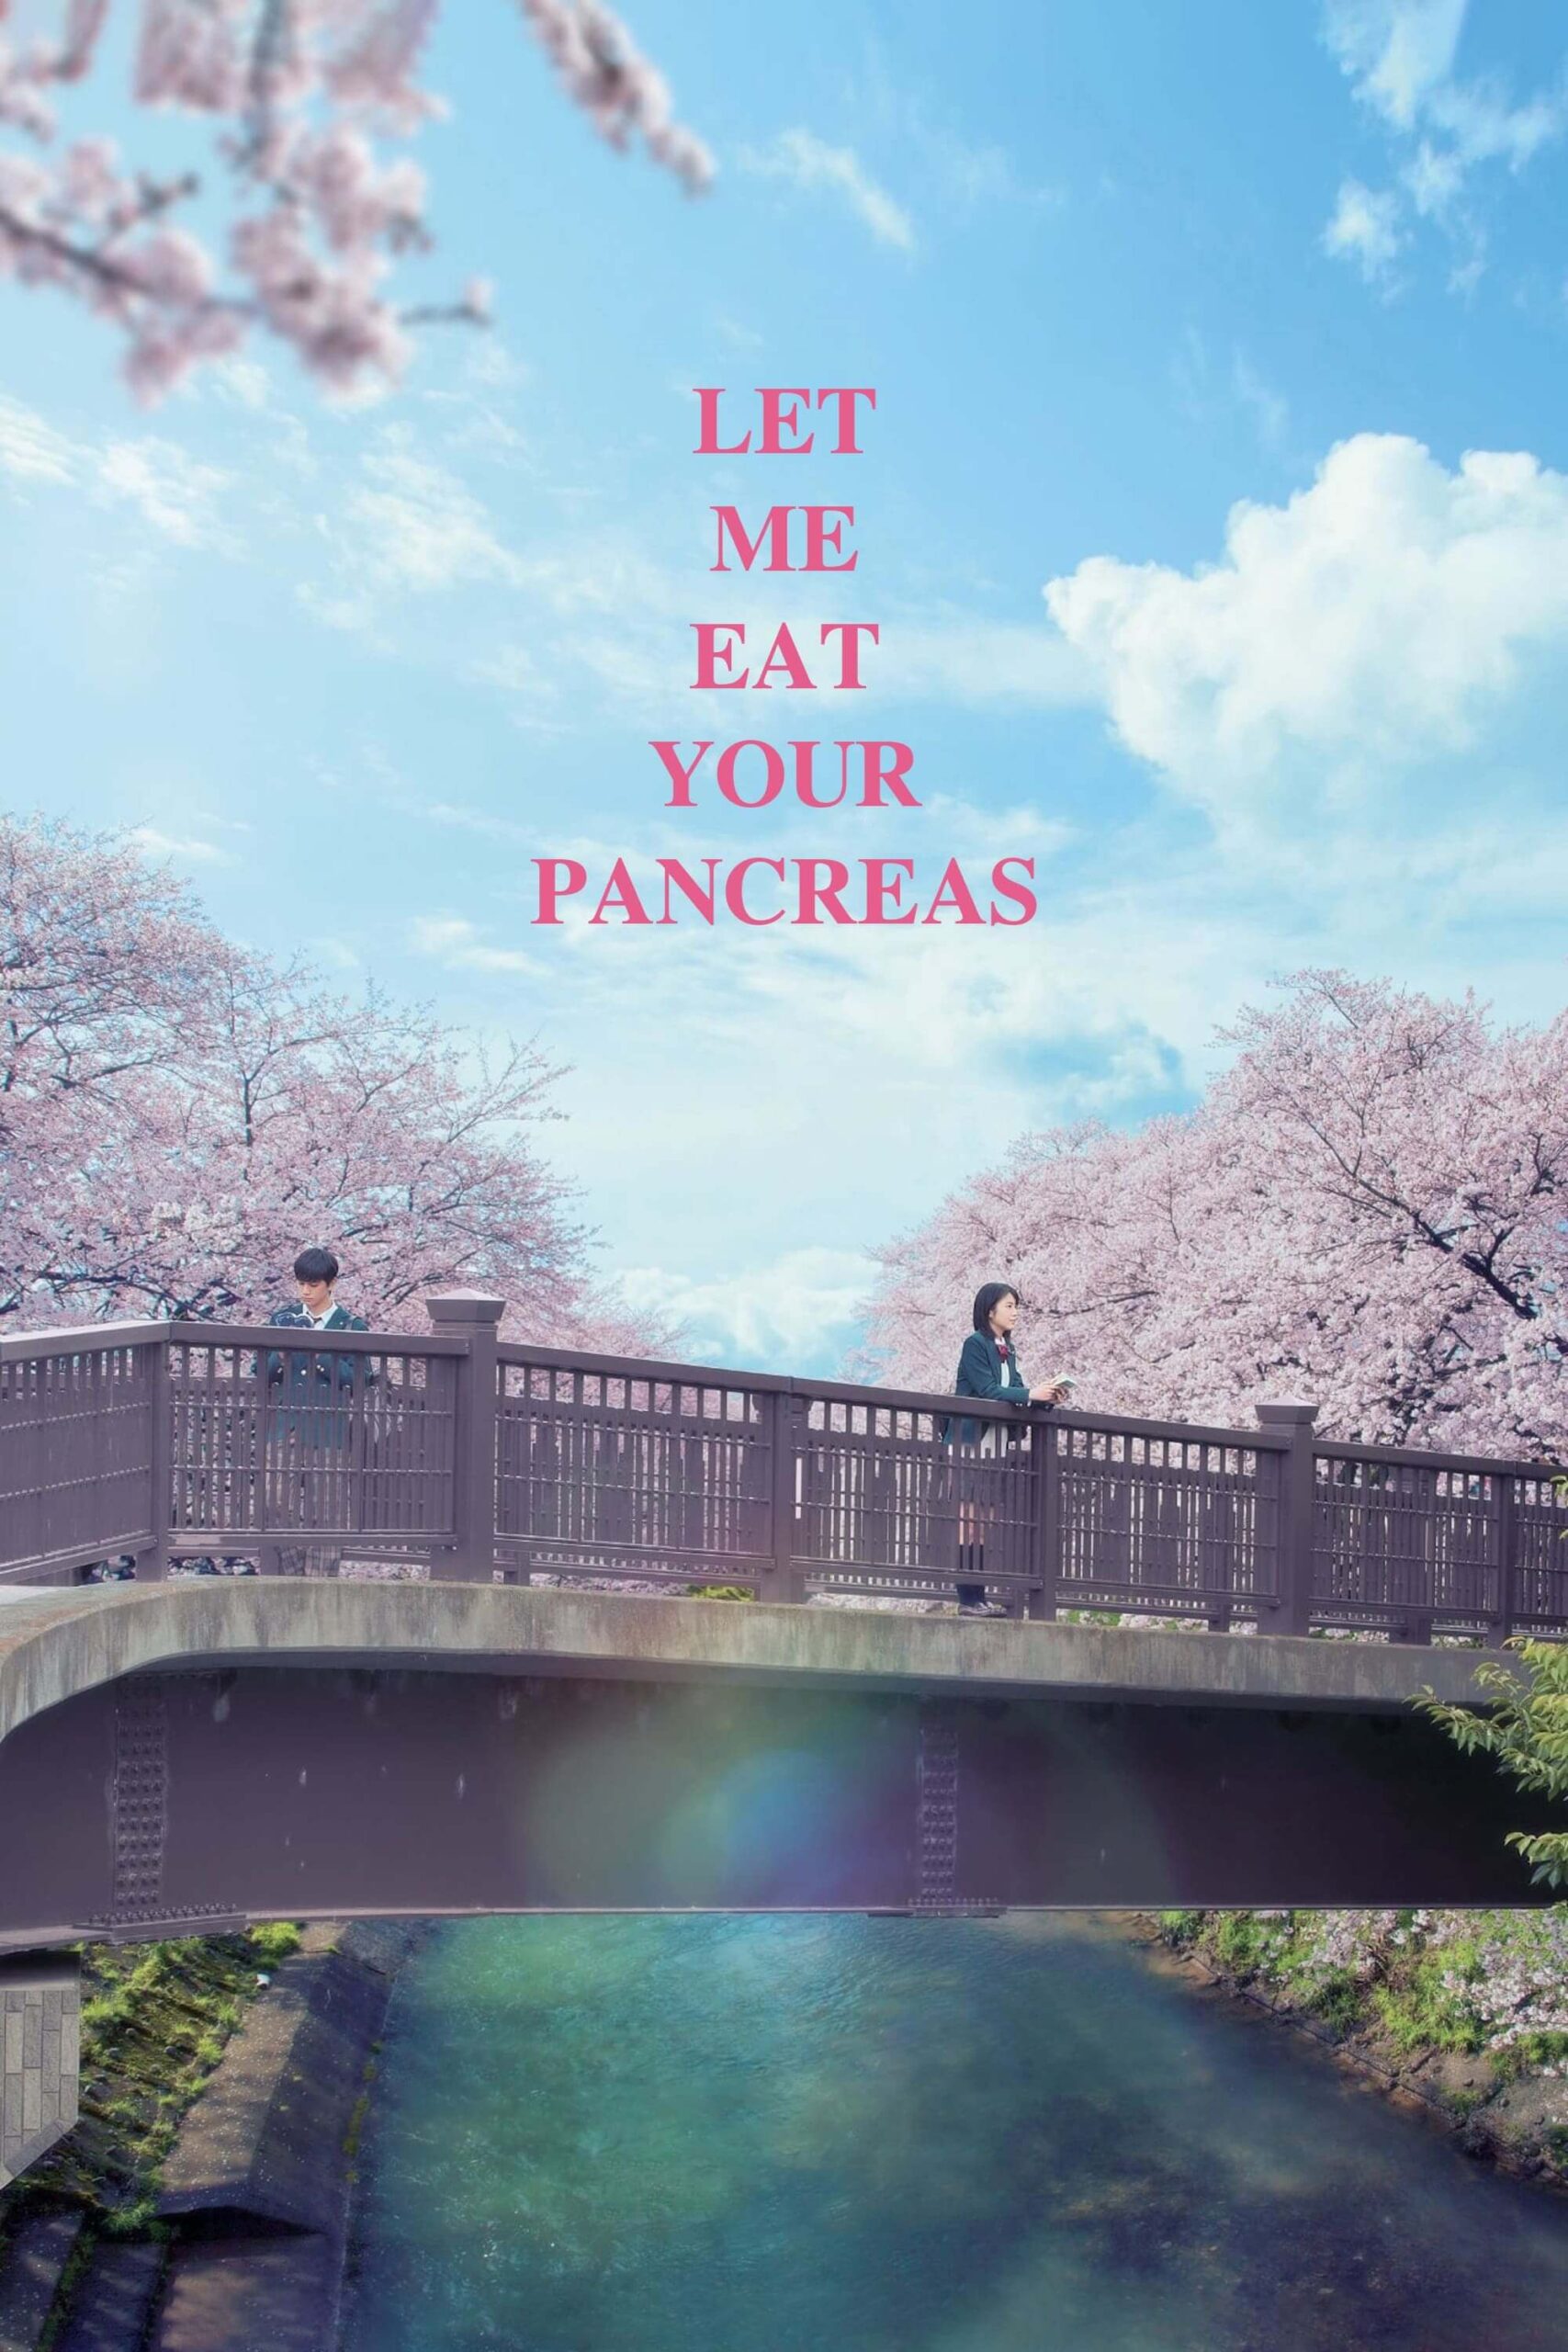 بذار جیگرتو بخورم (Let Me Eat Your Pancreas)